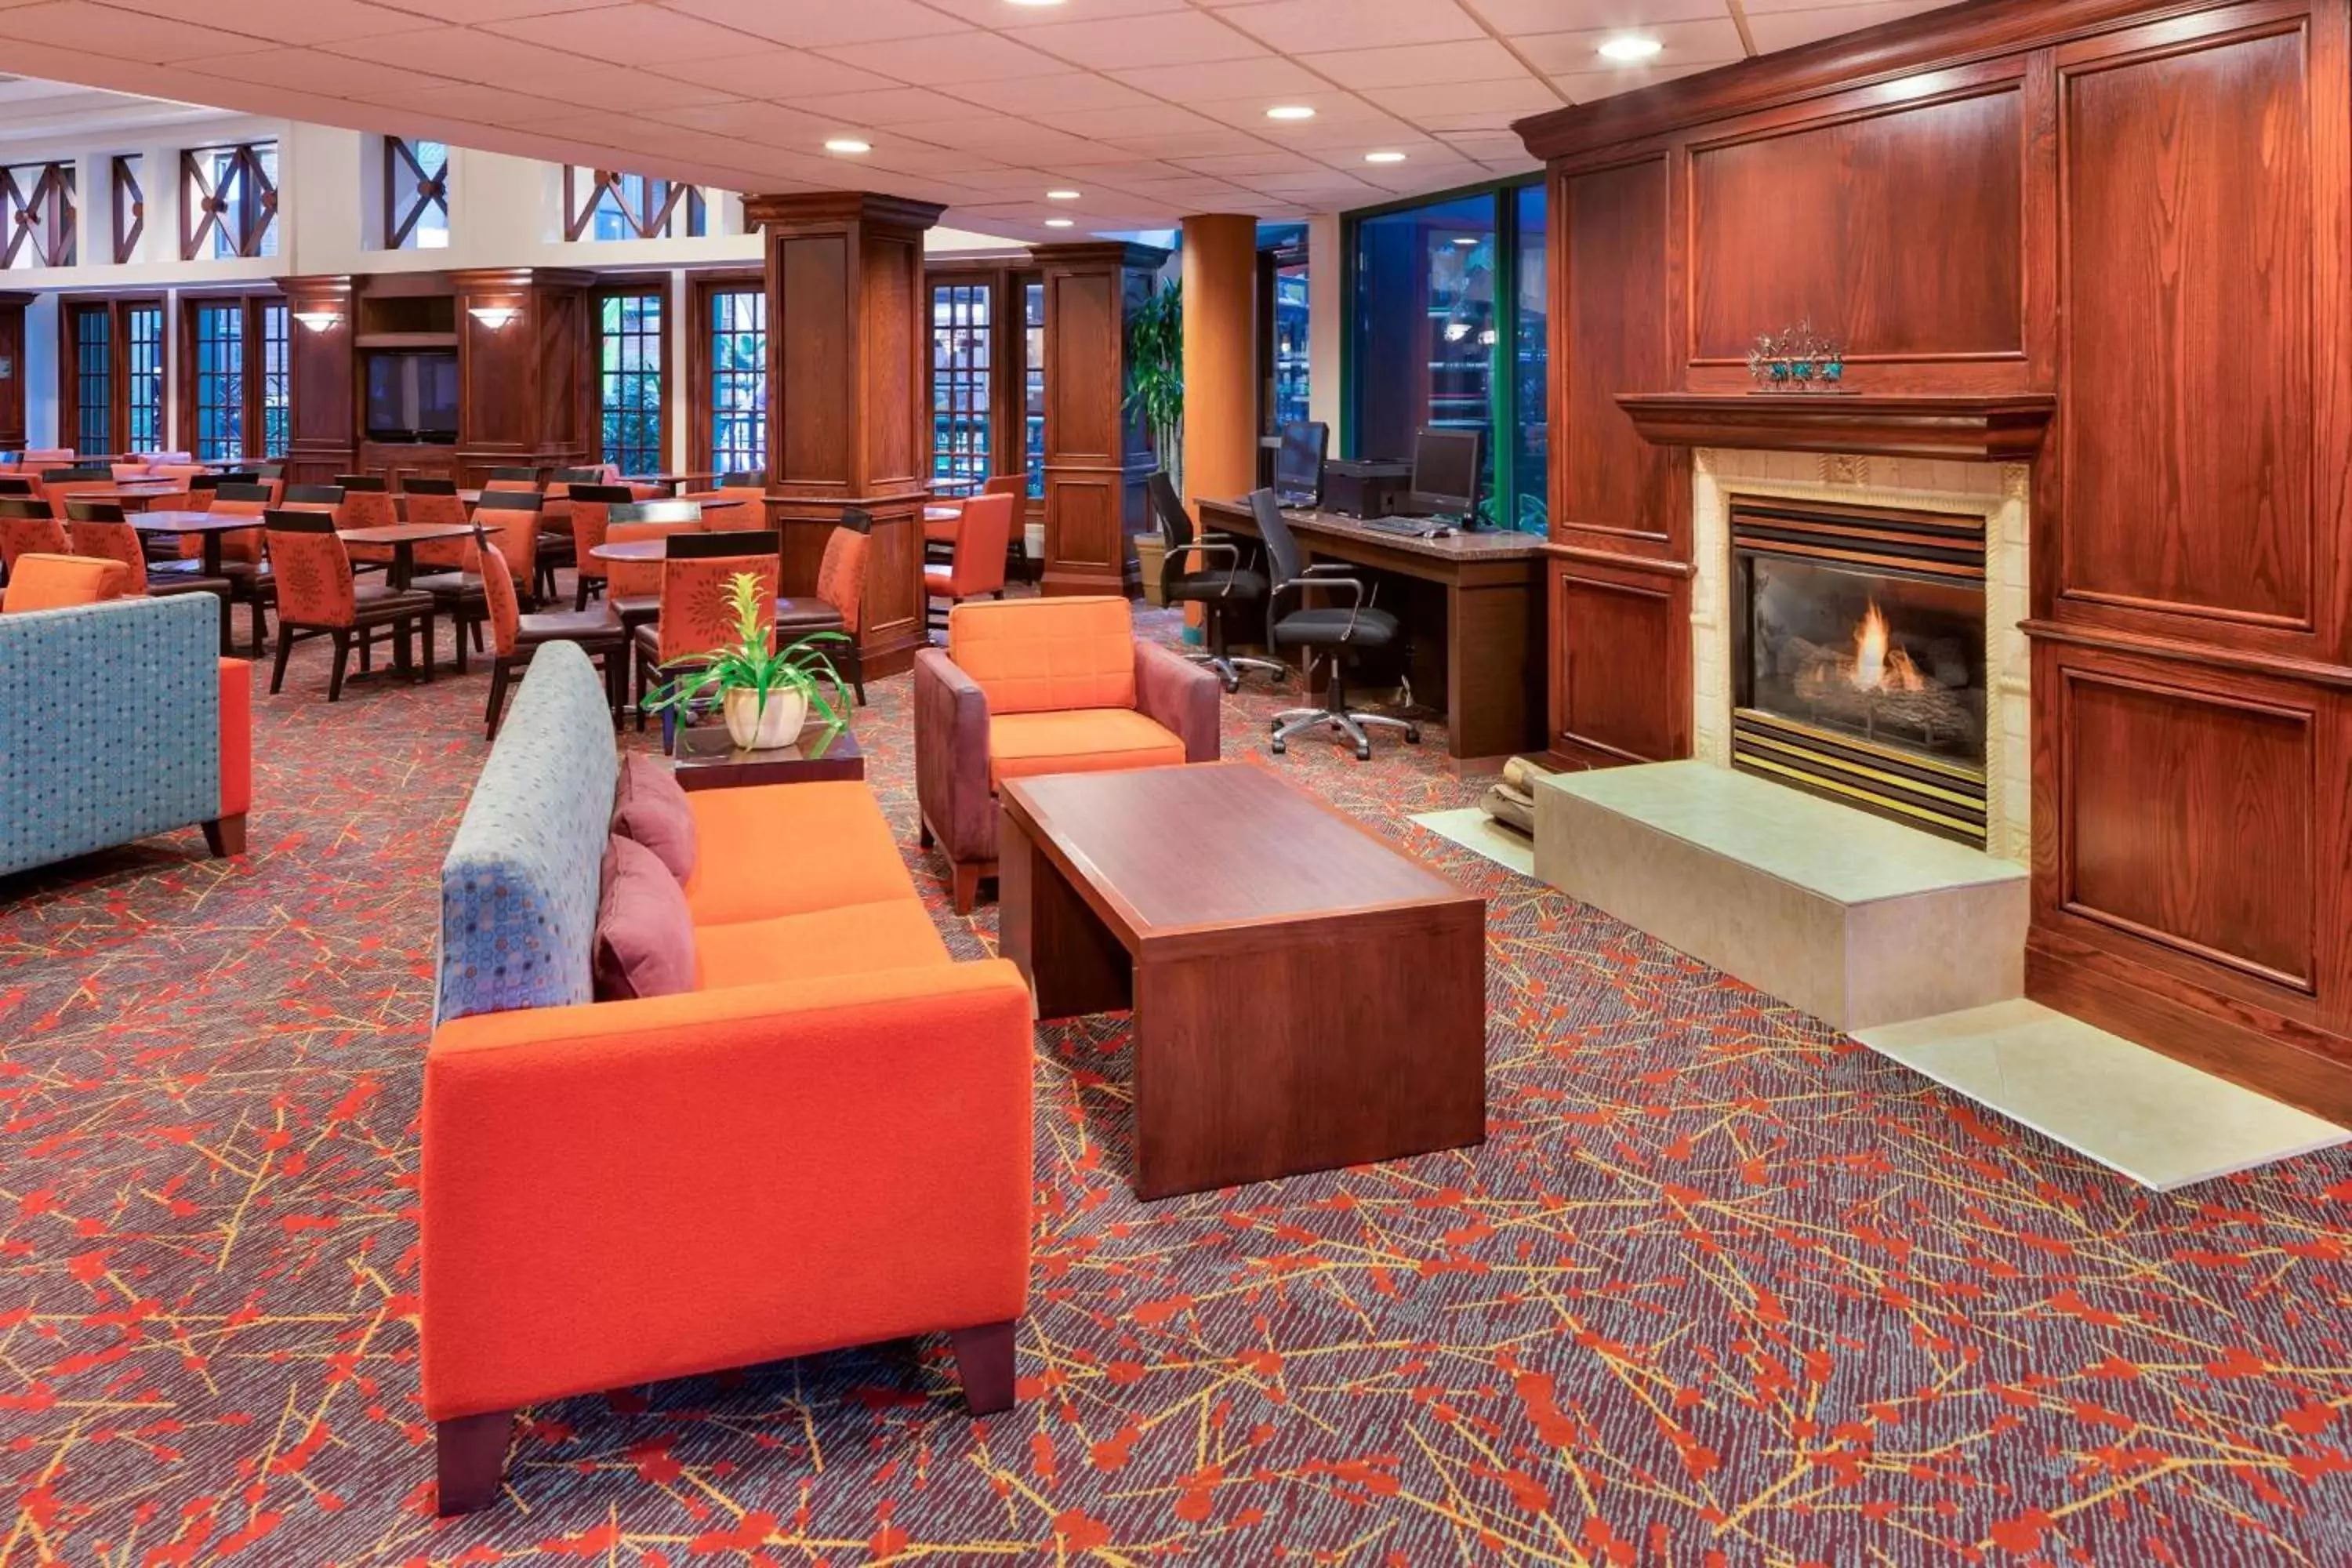 Lobby or reception in Residence Inn by Marriott Minneapolis Edina